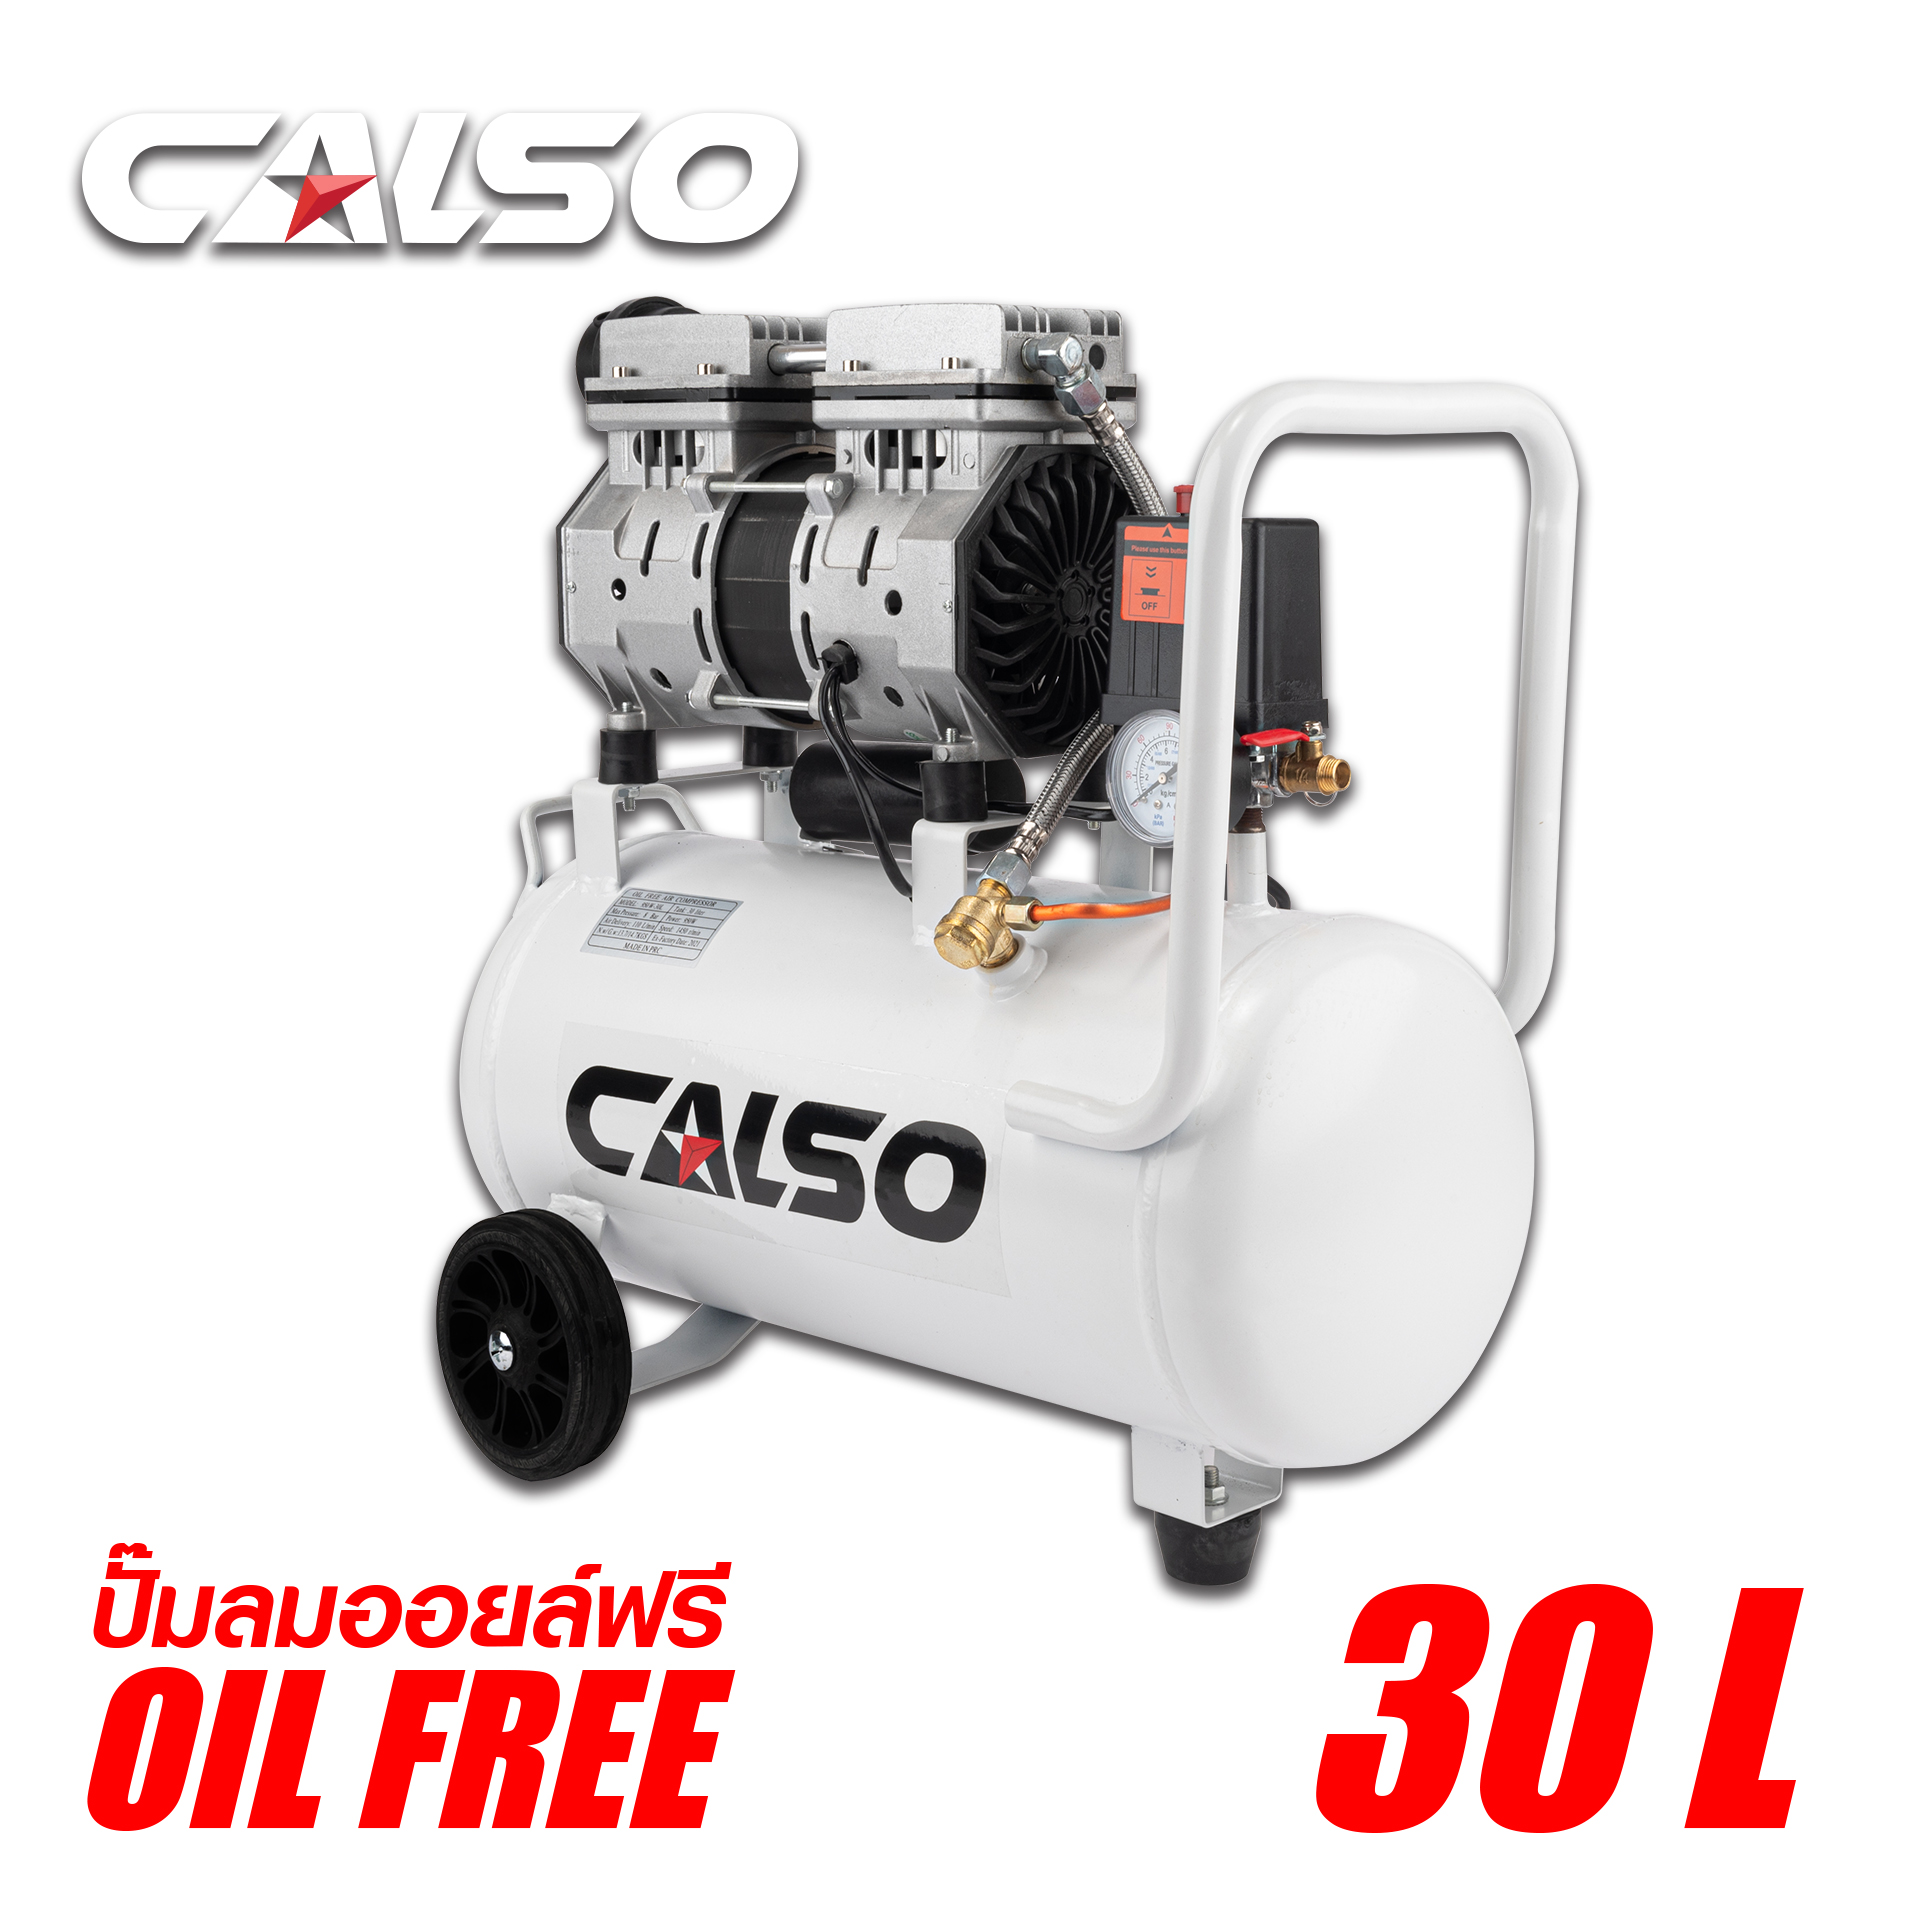 CALSO Air pump ปั๊มลม ปั๊มลมไม่ใช้น้ำมัน เสียงเงียบ รุ่น Oil Free ขนาด 30 ลิตร ปั้มลมชนิดขับตรง  บำรุงรักษาง่าย ลดค่าใช้จ่ายเรื่องน้ำมันหล่อลื่น